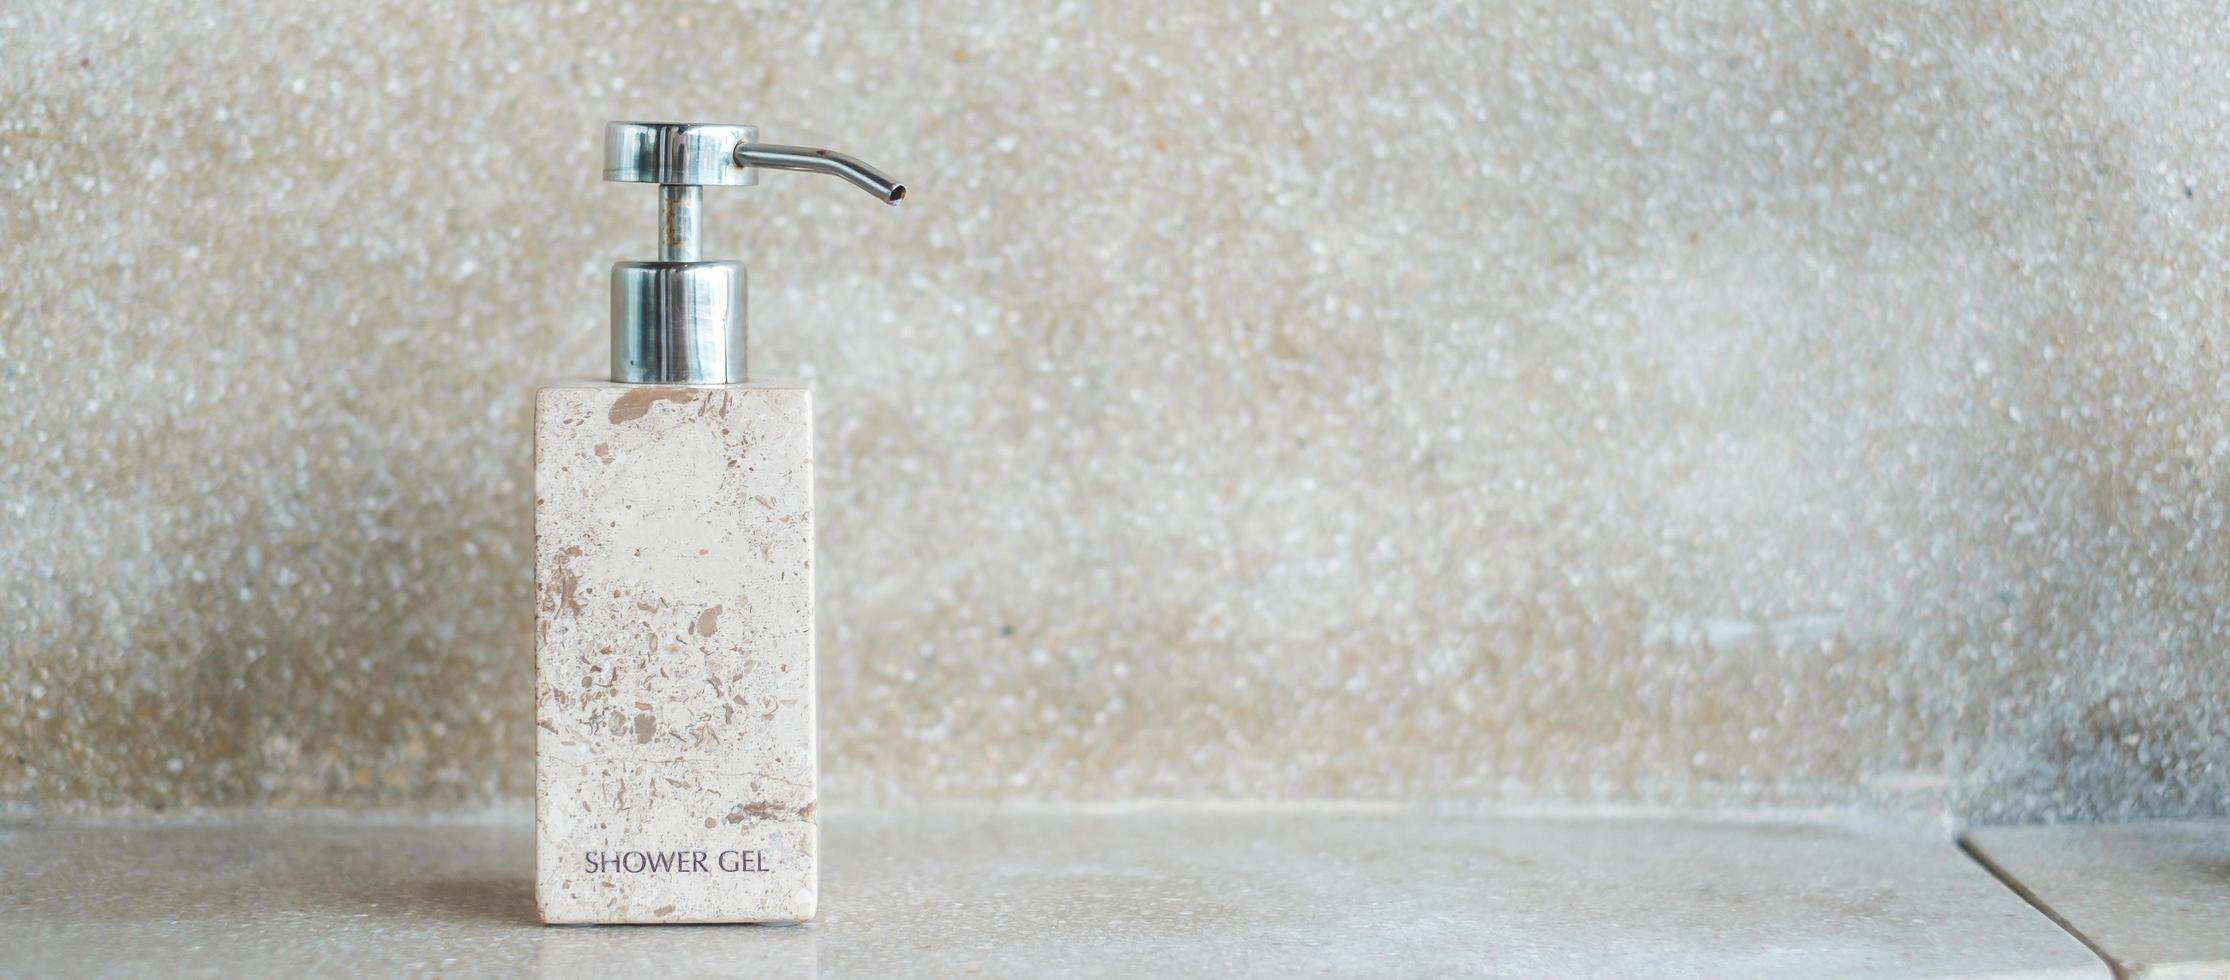 toalettartiklar flaskor i badrummet på lyxhotell eller moderna hem. body shower gel i keramik med väggbakgrund foto